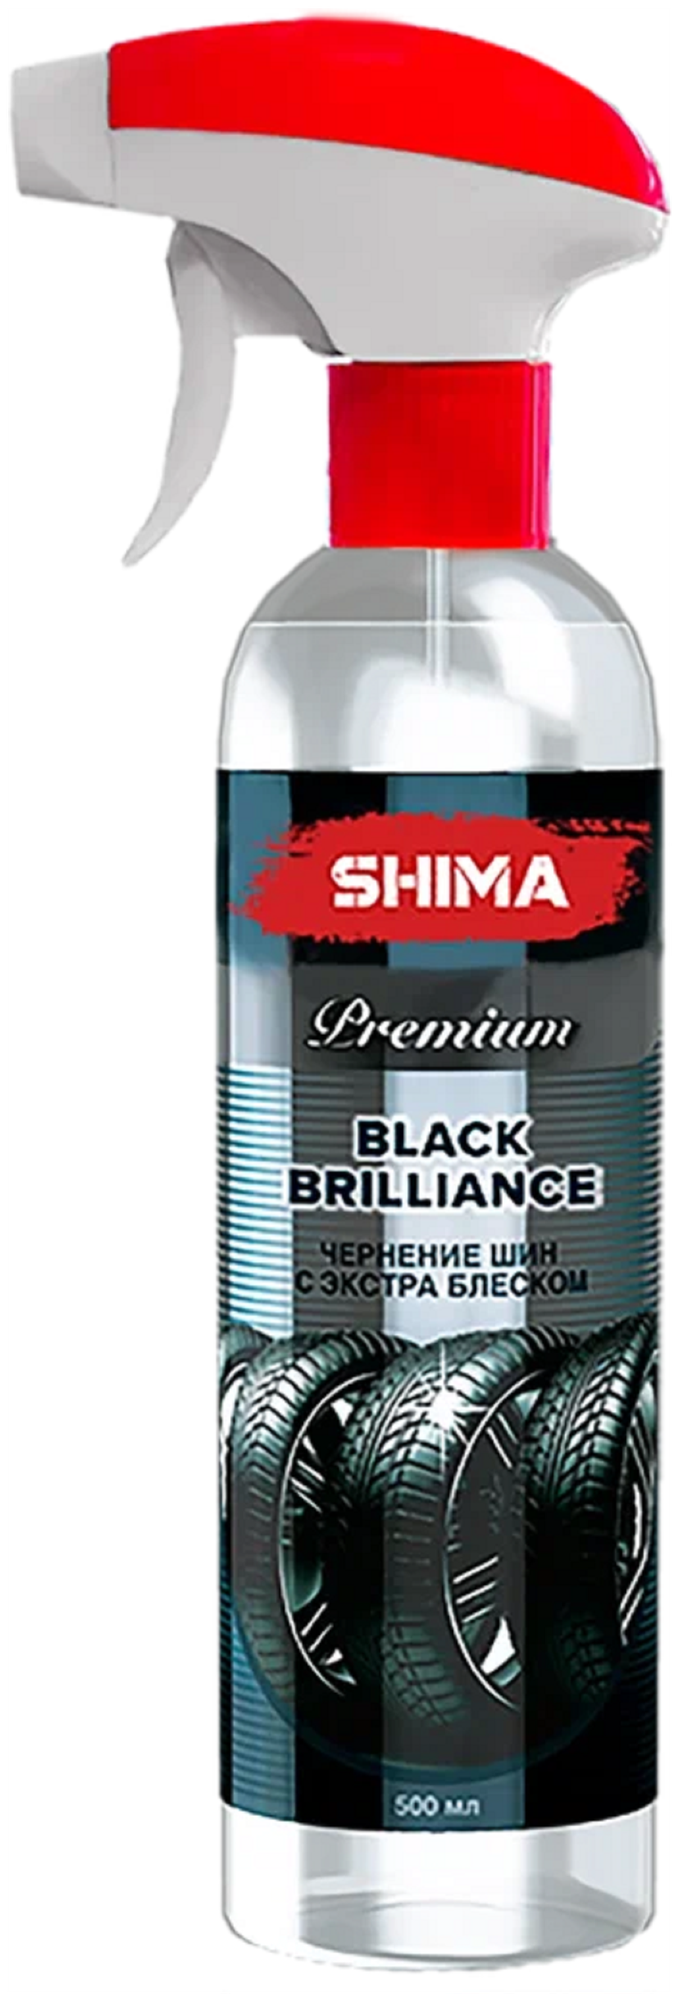 Чернитель резины SHIMA (Чернитель шин) Premium BLACK BRILLIANCE чернение шин с экстра блеском 500 мл. Art: 4631111103357